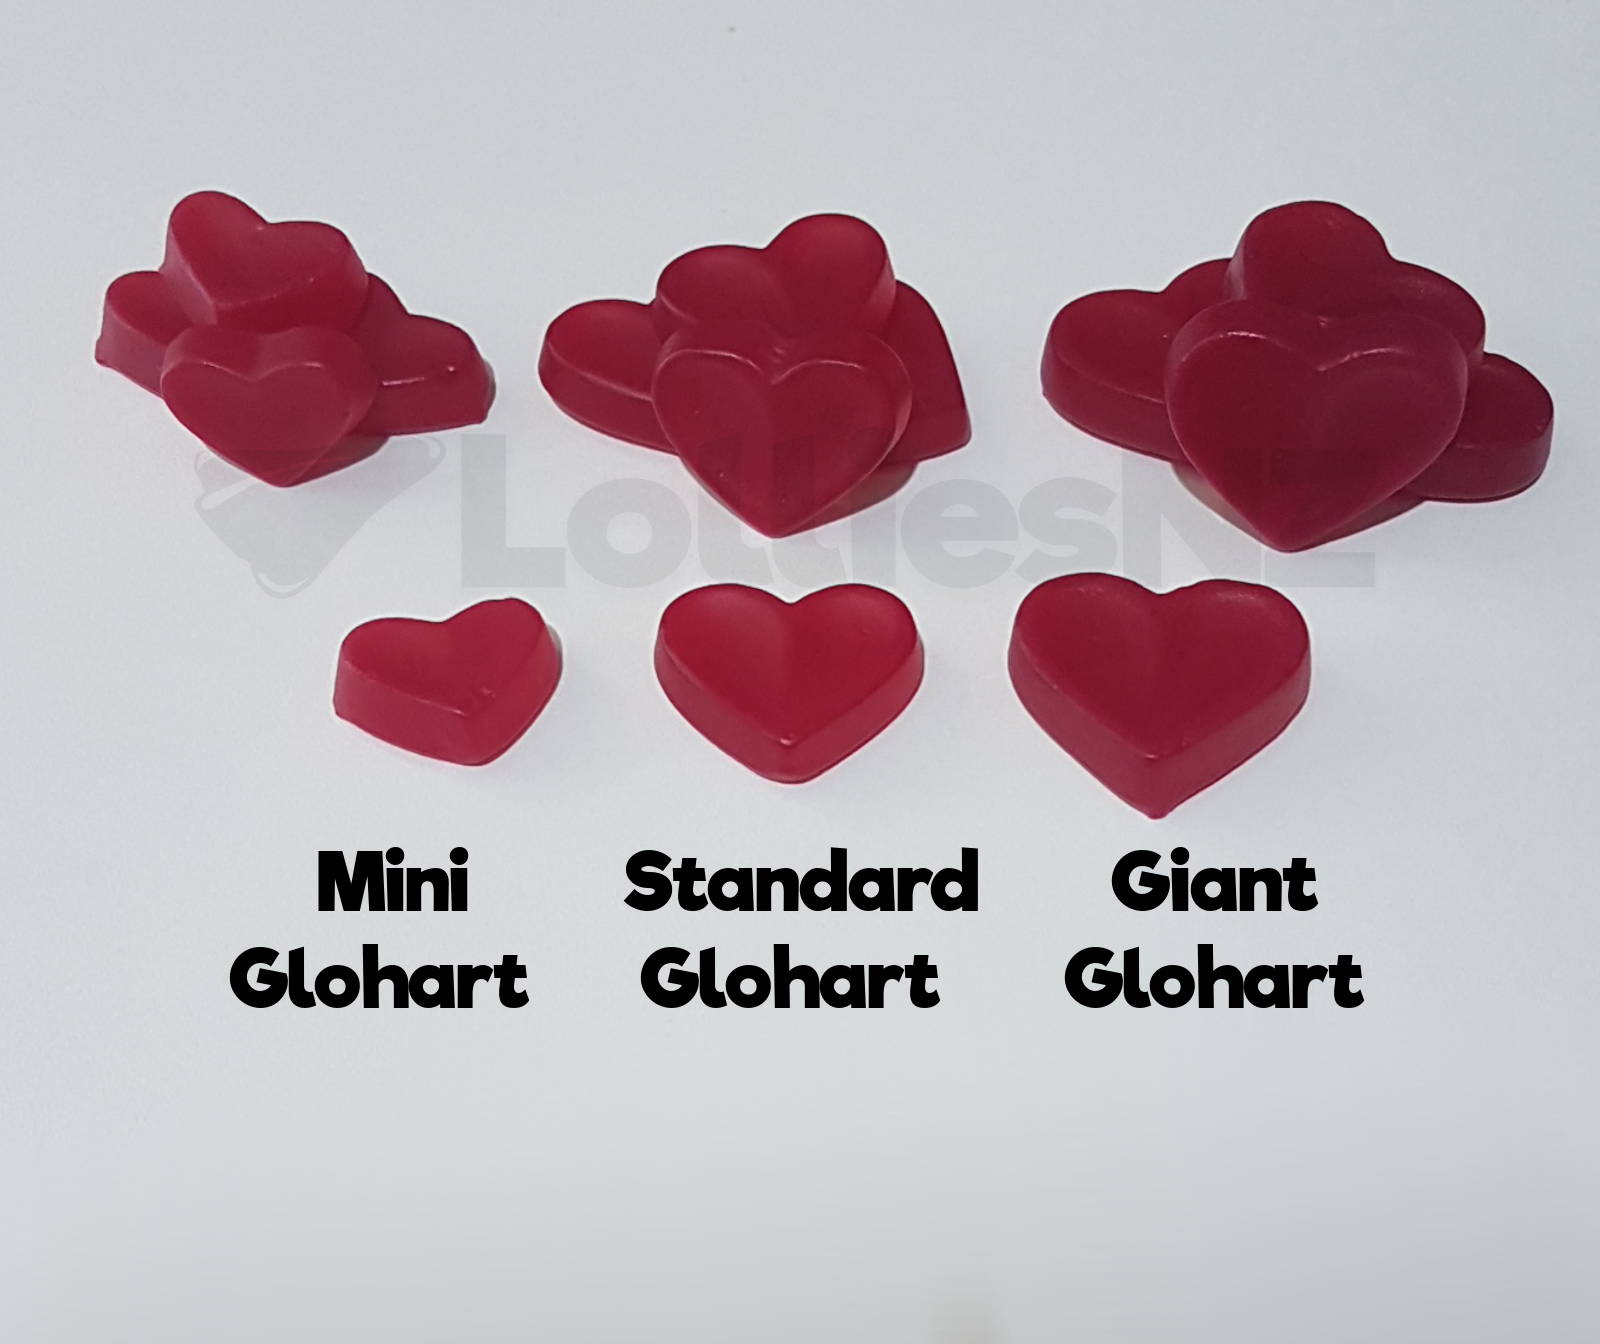 glohart-sizes